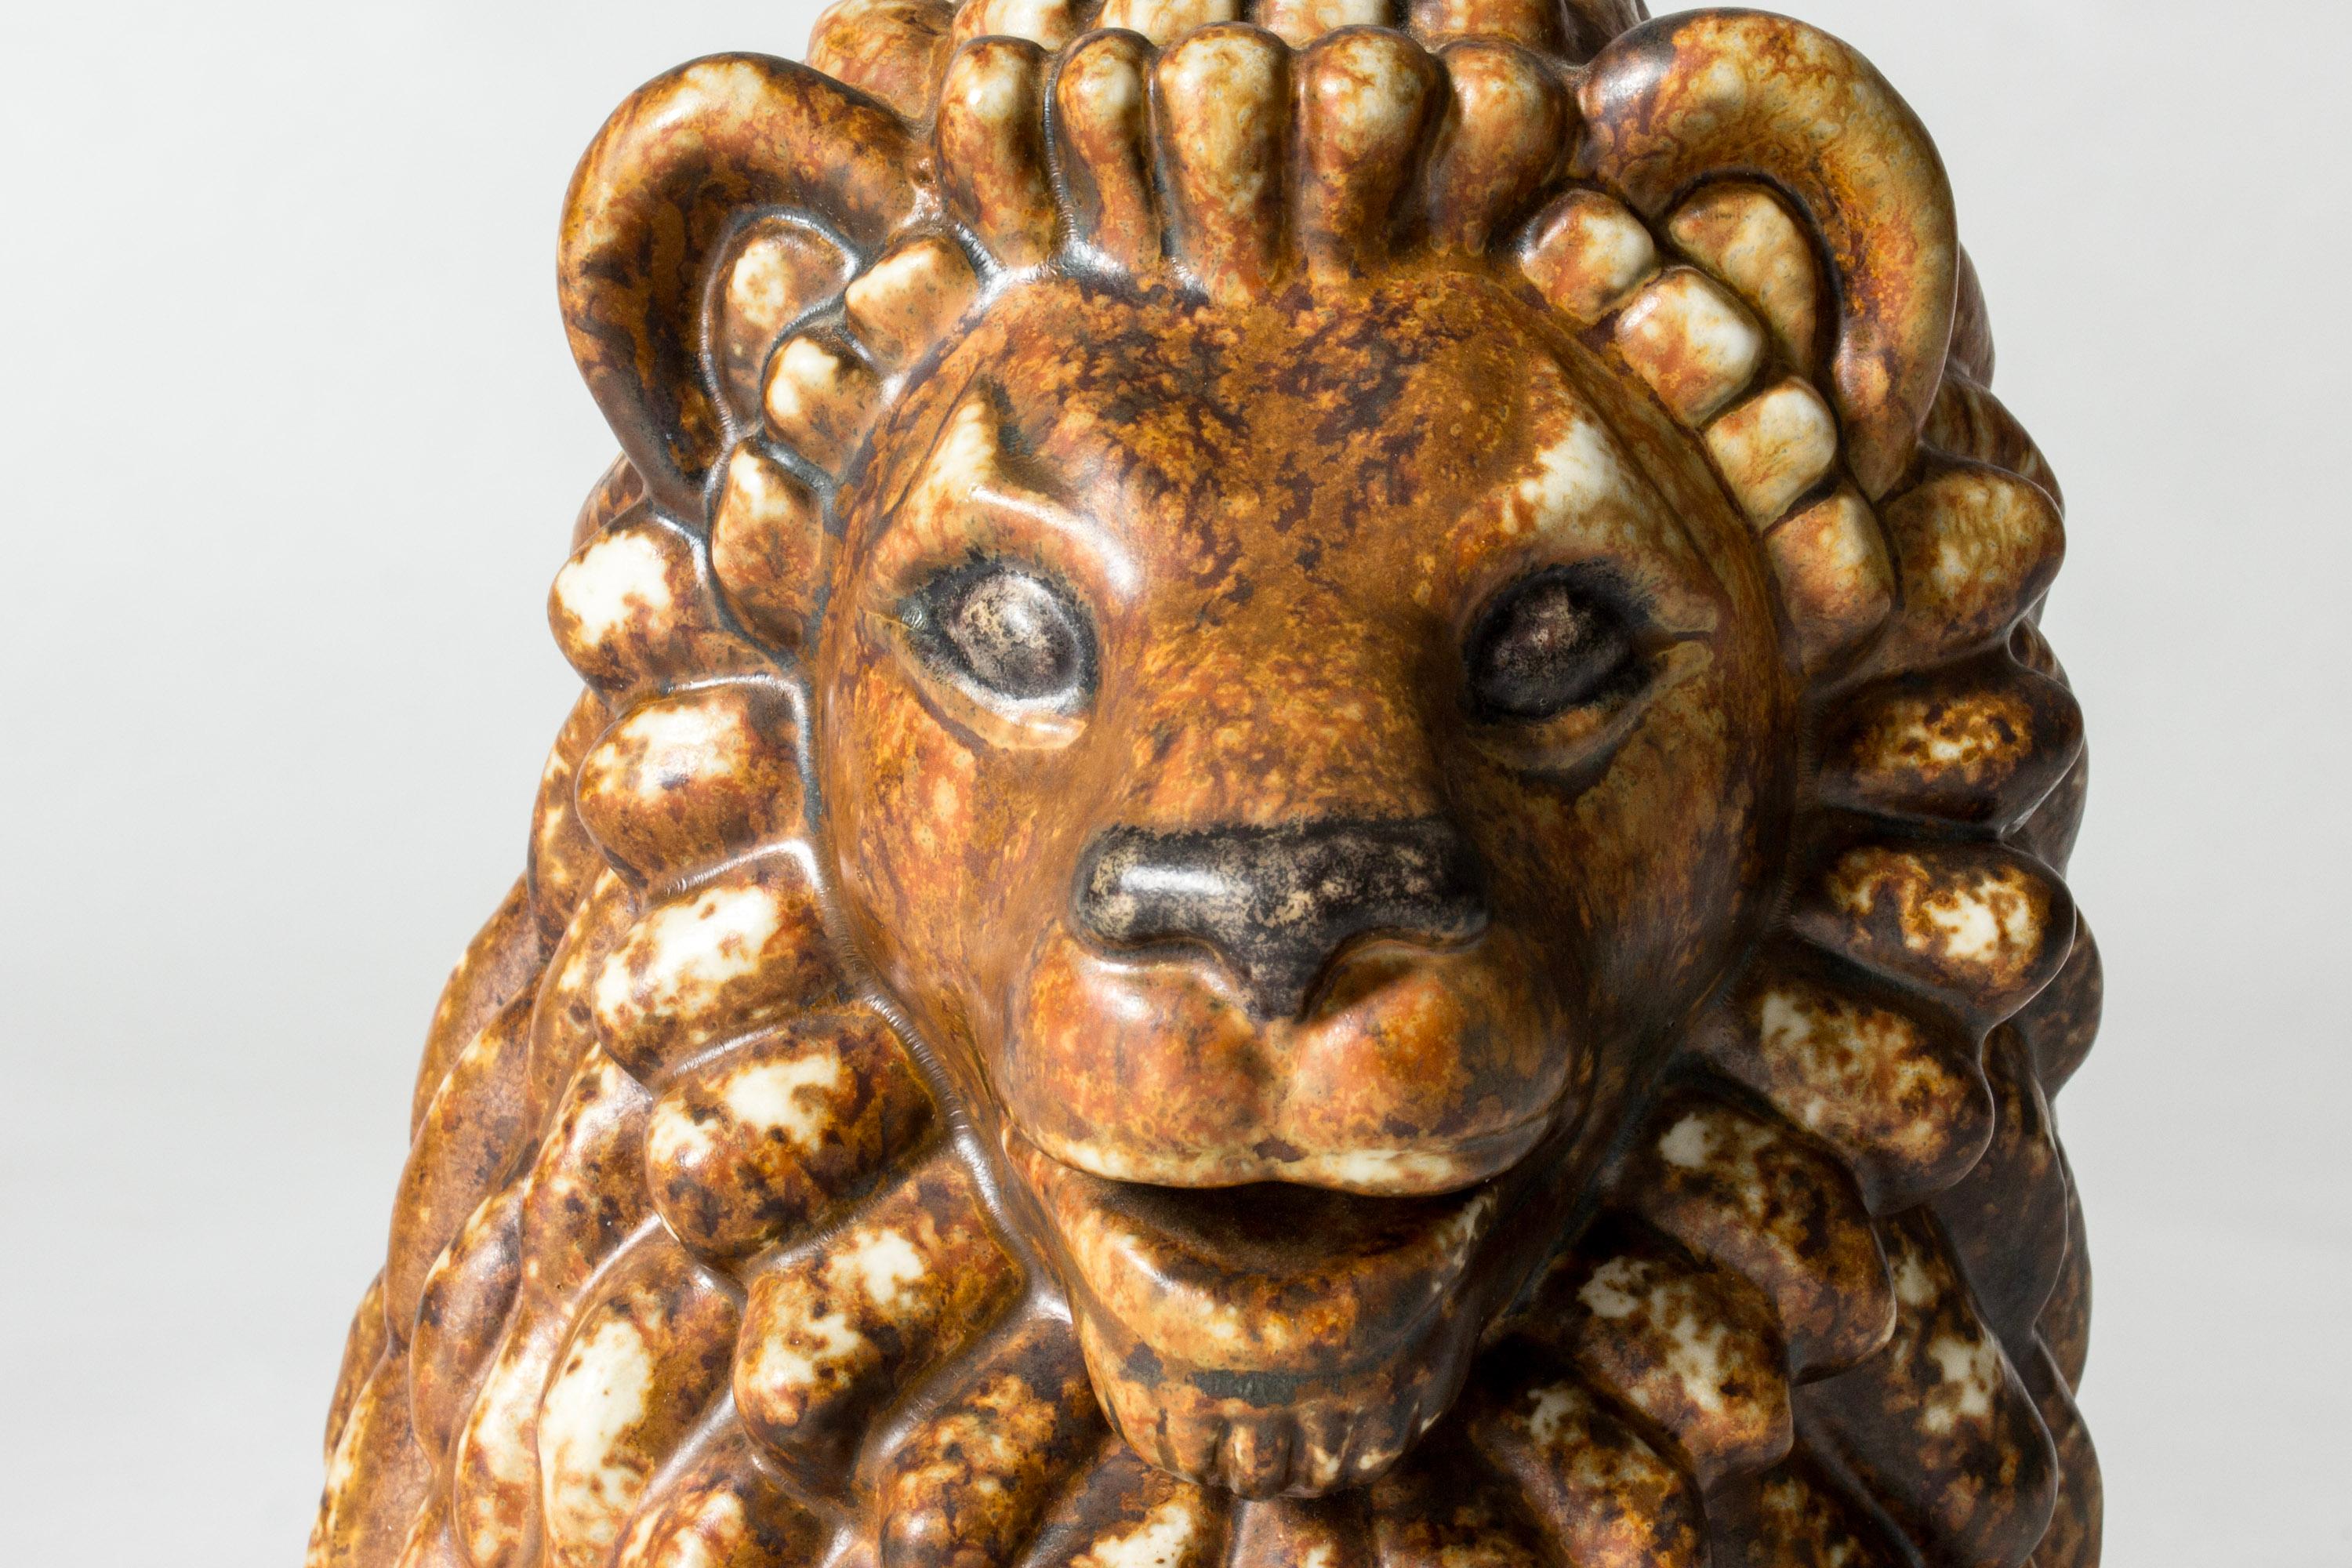 Magnifique figurine de lion en grès de Gunnar Nylund avec un visage expressif et une glaçure qui s'intègre parfaitement dans tous les coins et recoins. Les figurines animales de Gunnar Nylund comptent parmi ses créations les plus appréciées,